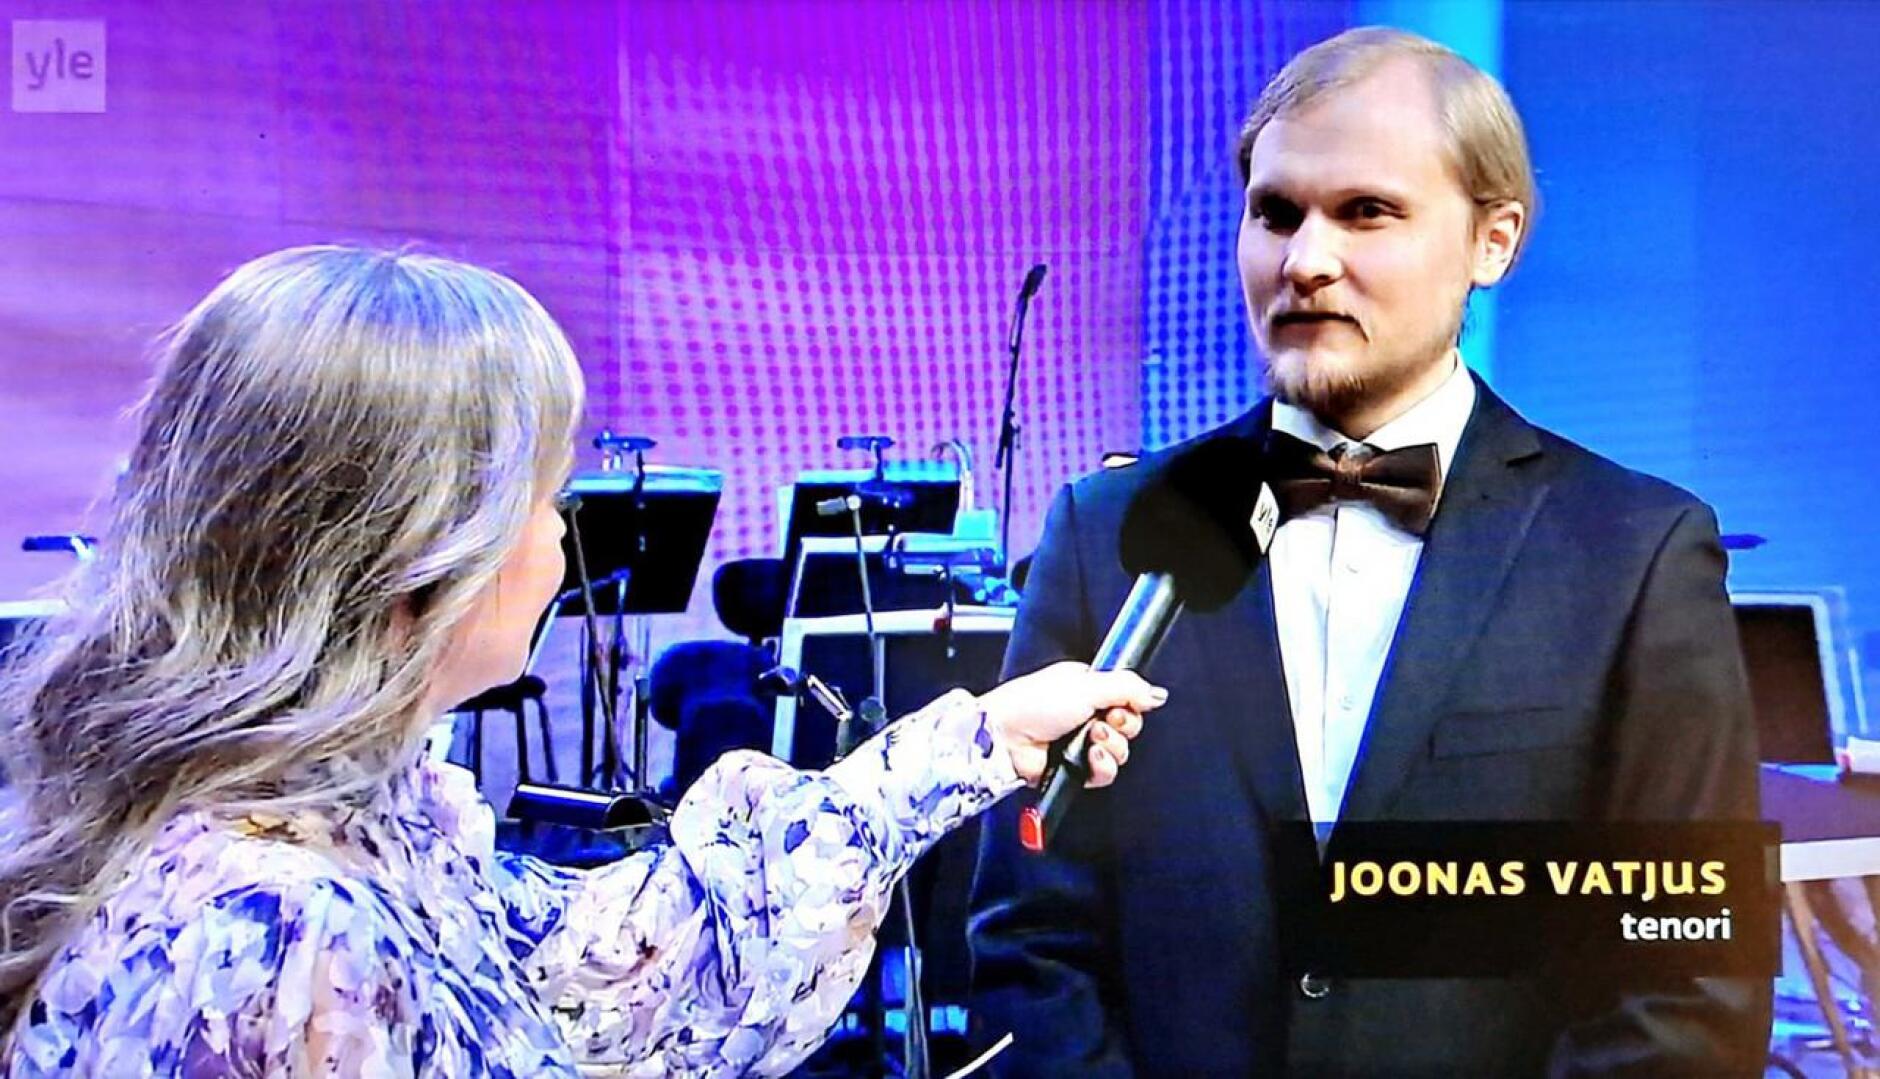 Joonas Vatjus sijoittui Lappeenrannan laulukilpailussa jaetulle kolmannelle sijalle miesten sarjan finaalissa, jossa lauloi kolme laulajaa.